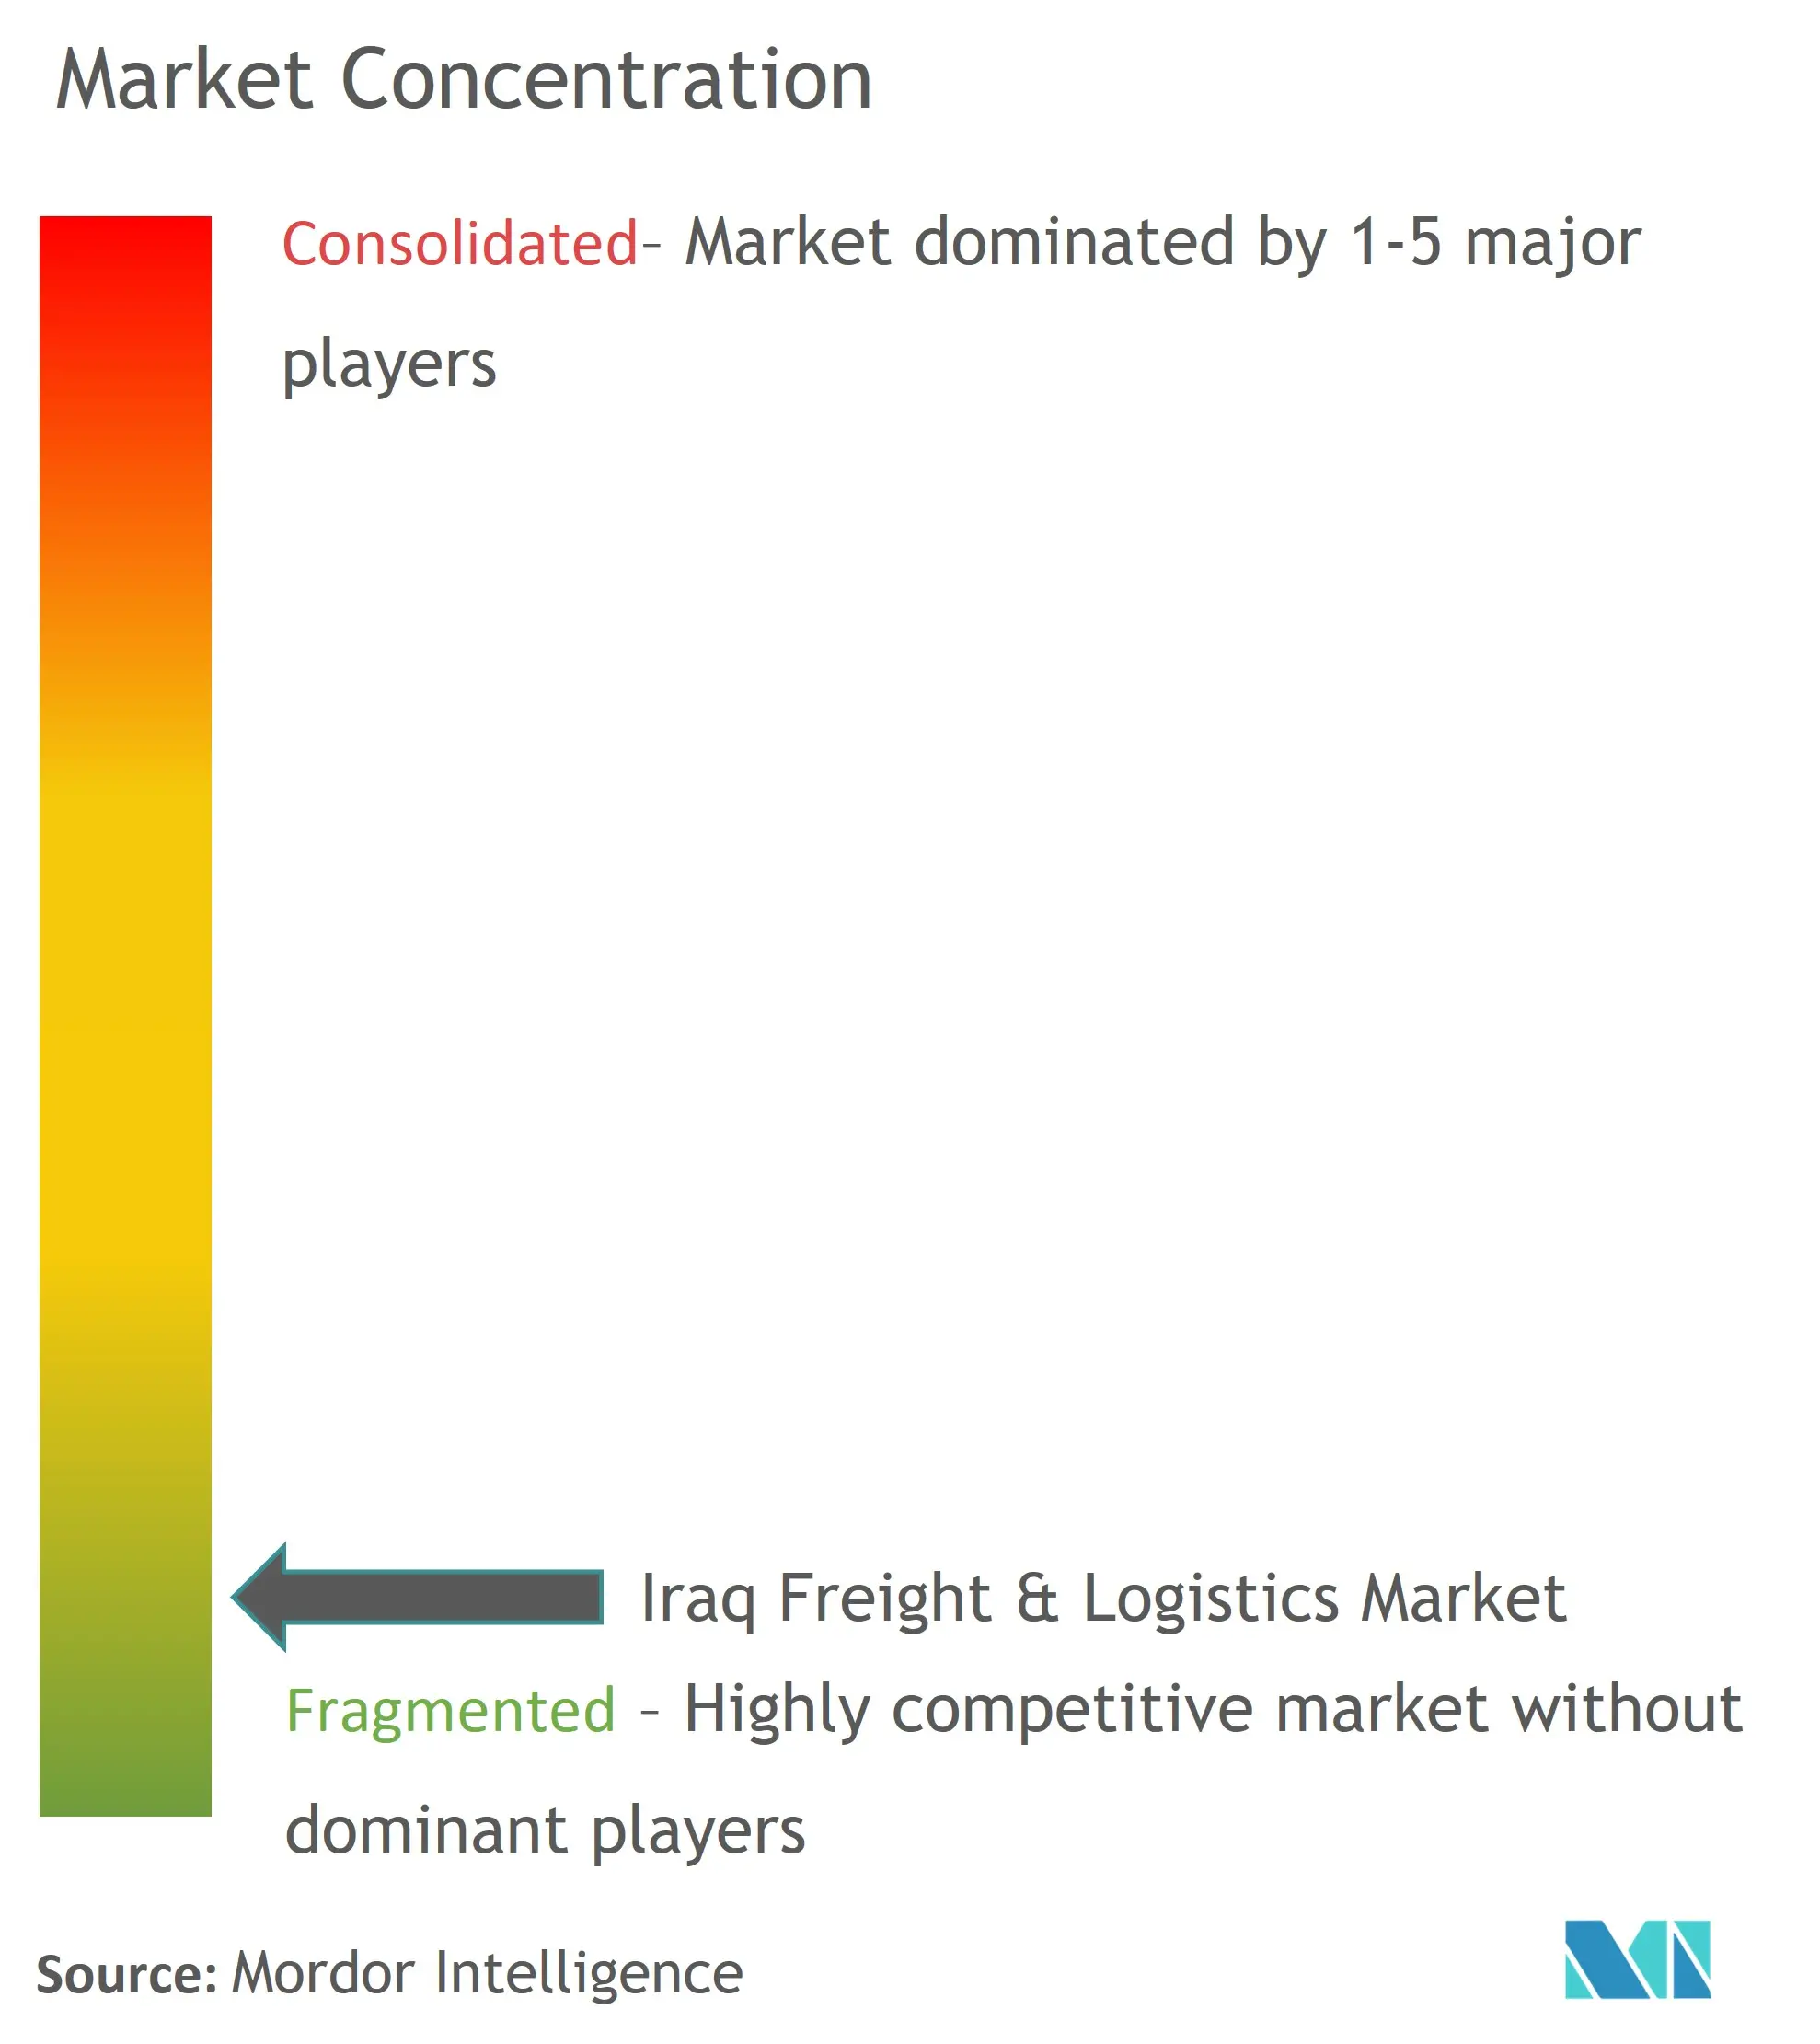 イラクの貨物と物流市場集中度